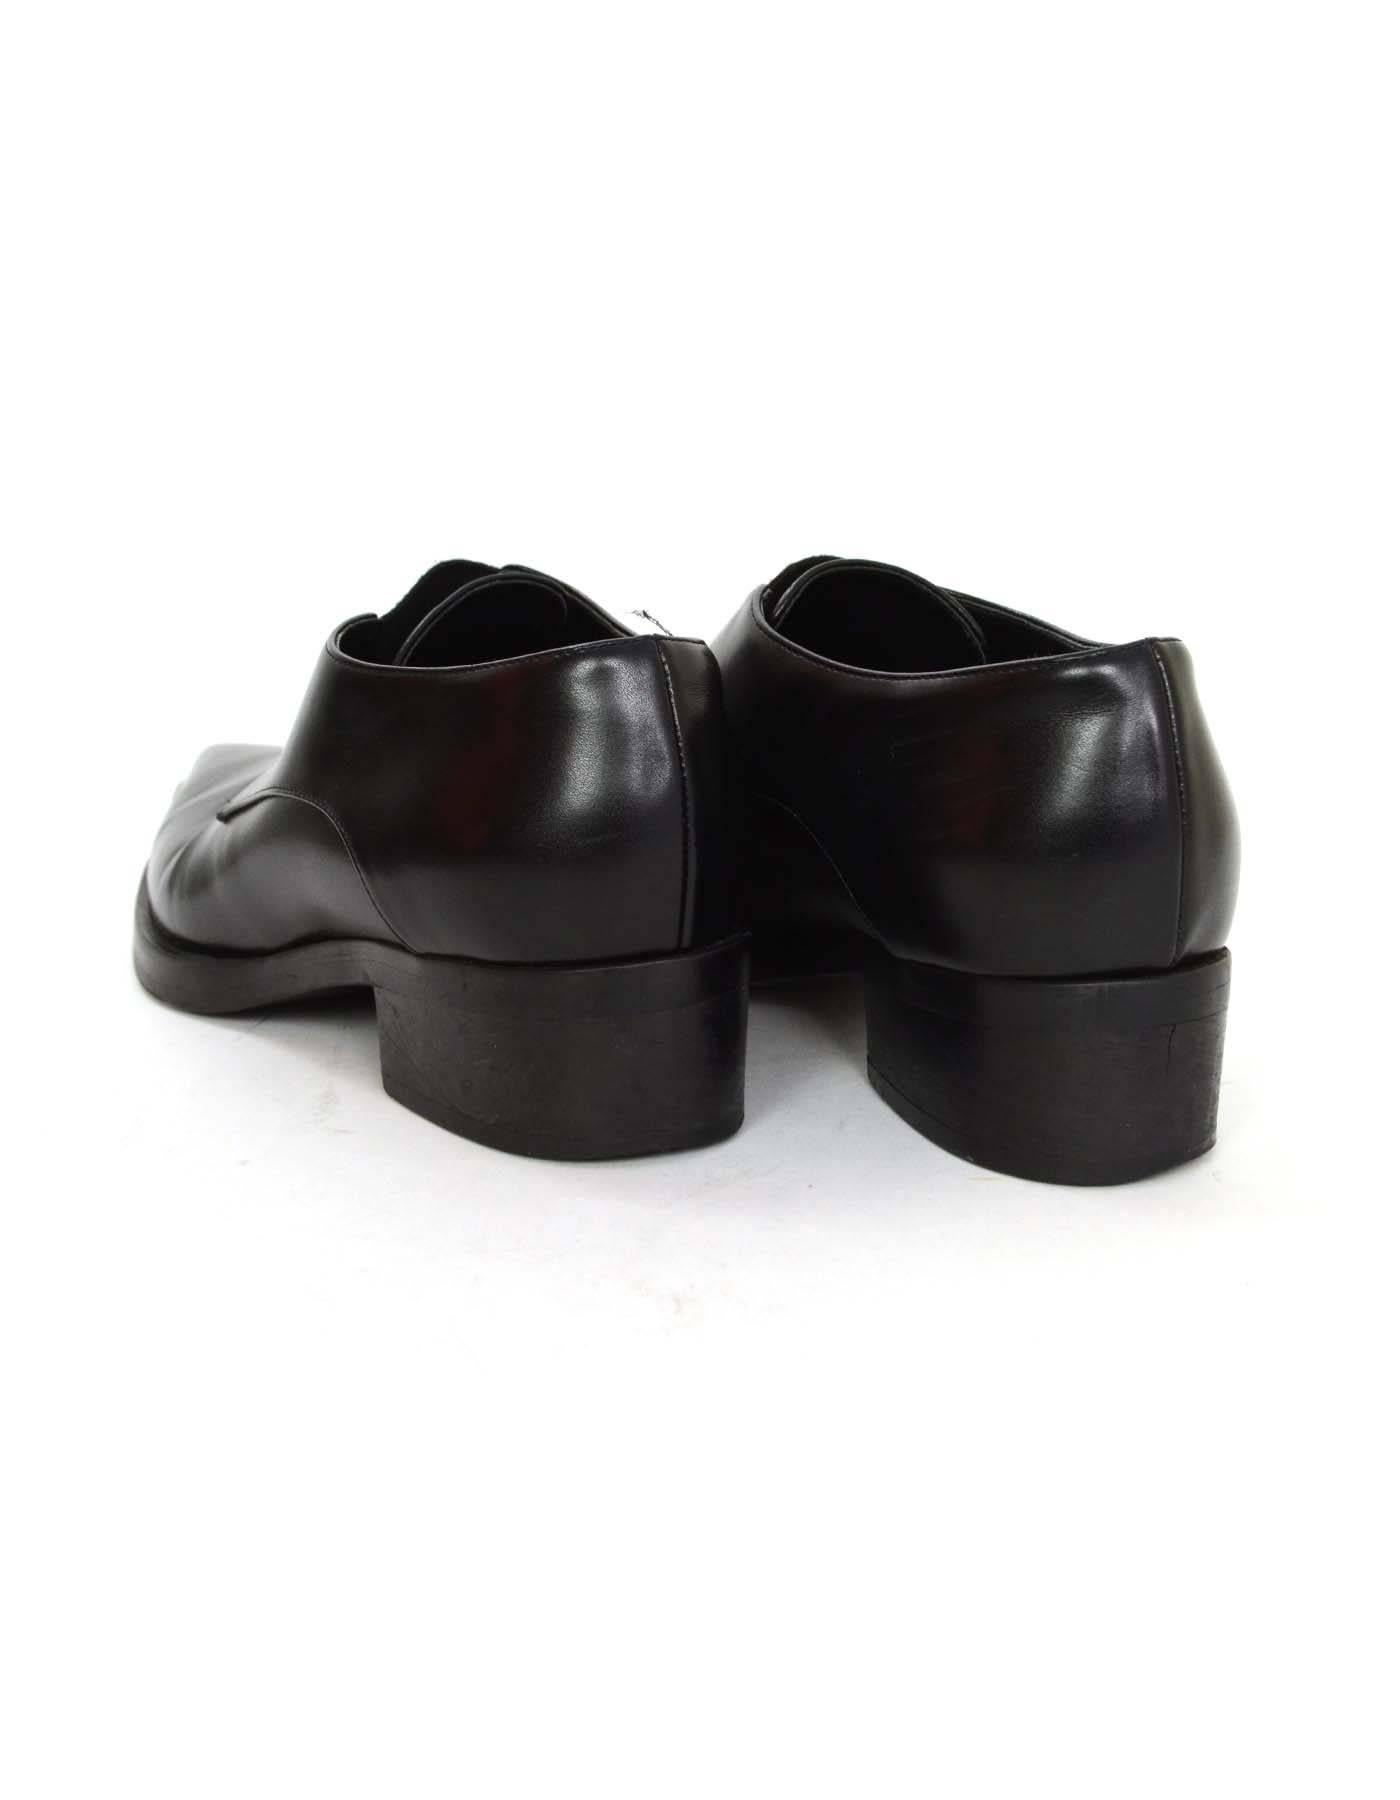 Stella McCartney Black Pointed Toe Tuxedo Shoes sz 37 1